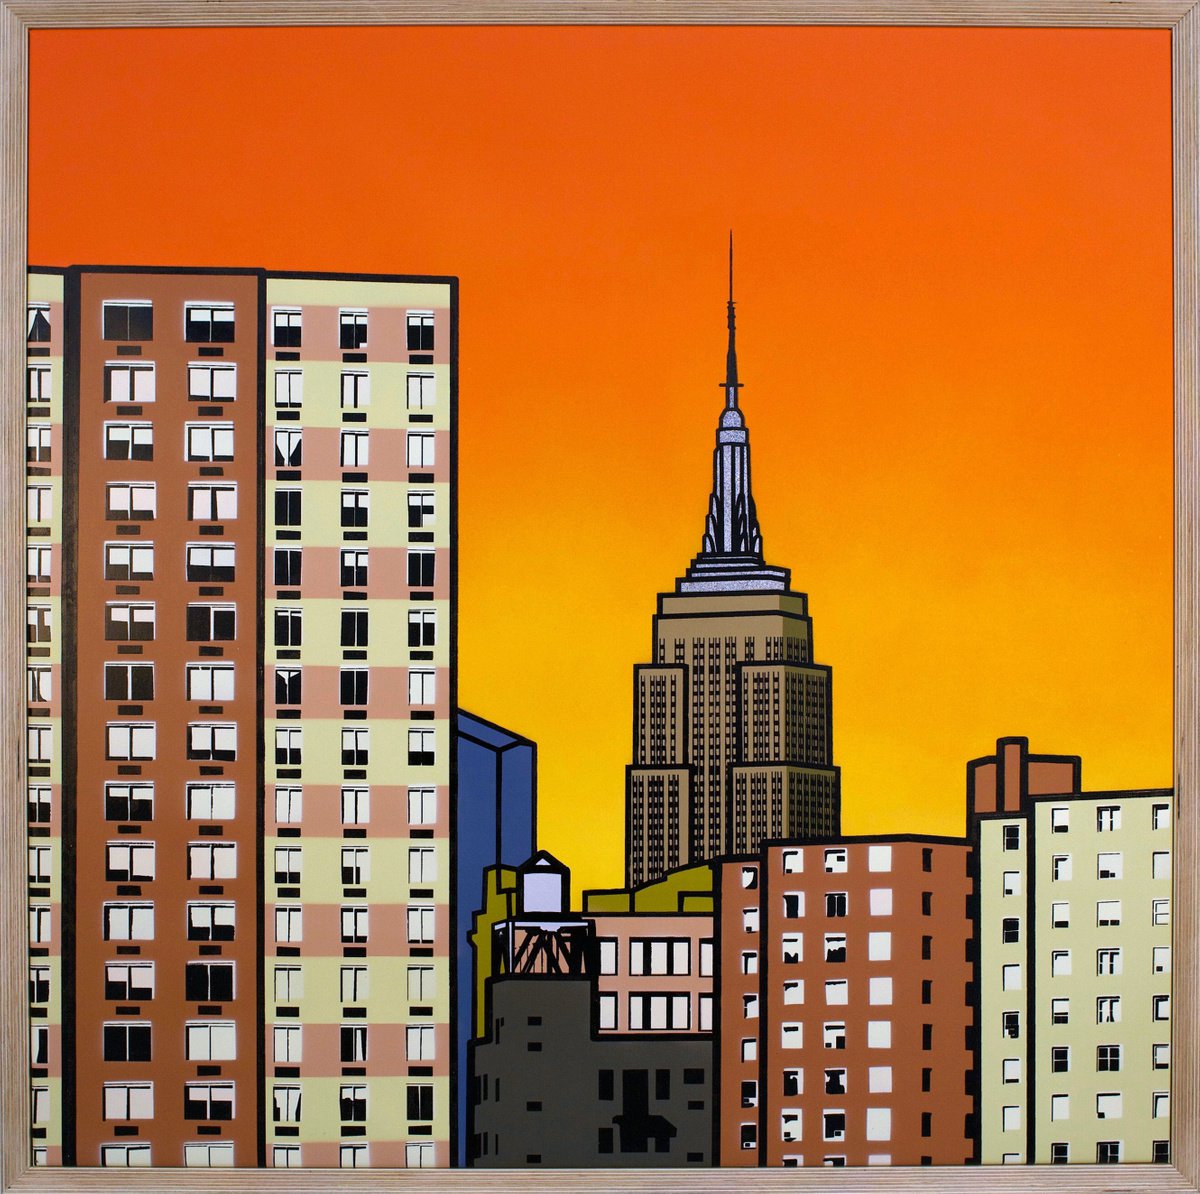 Manhattan Sunset #1 by Gerry Buxton